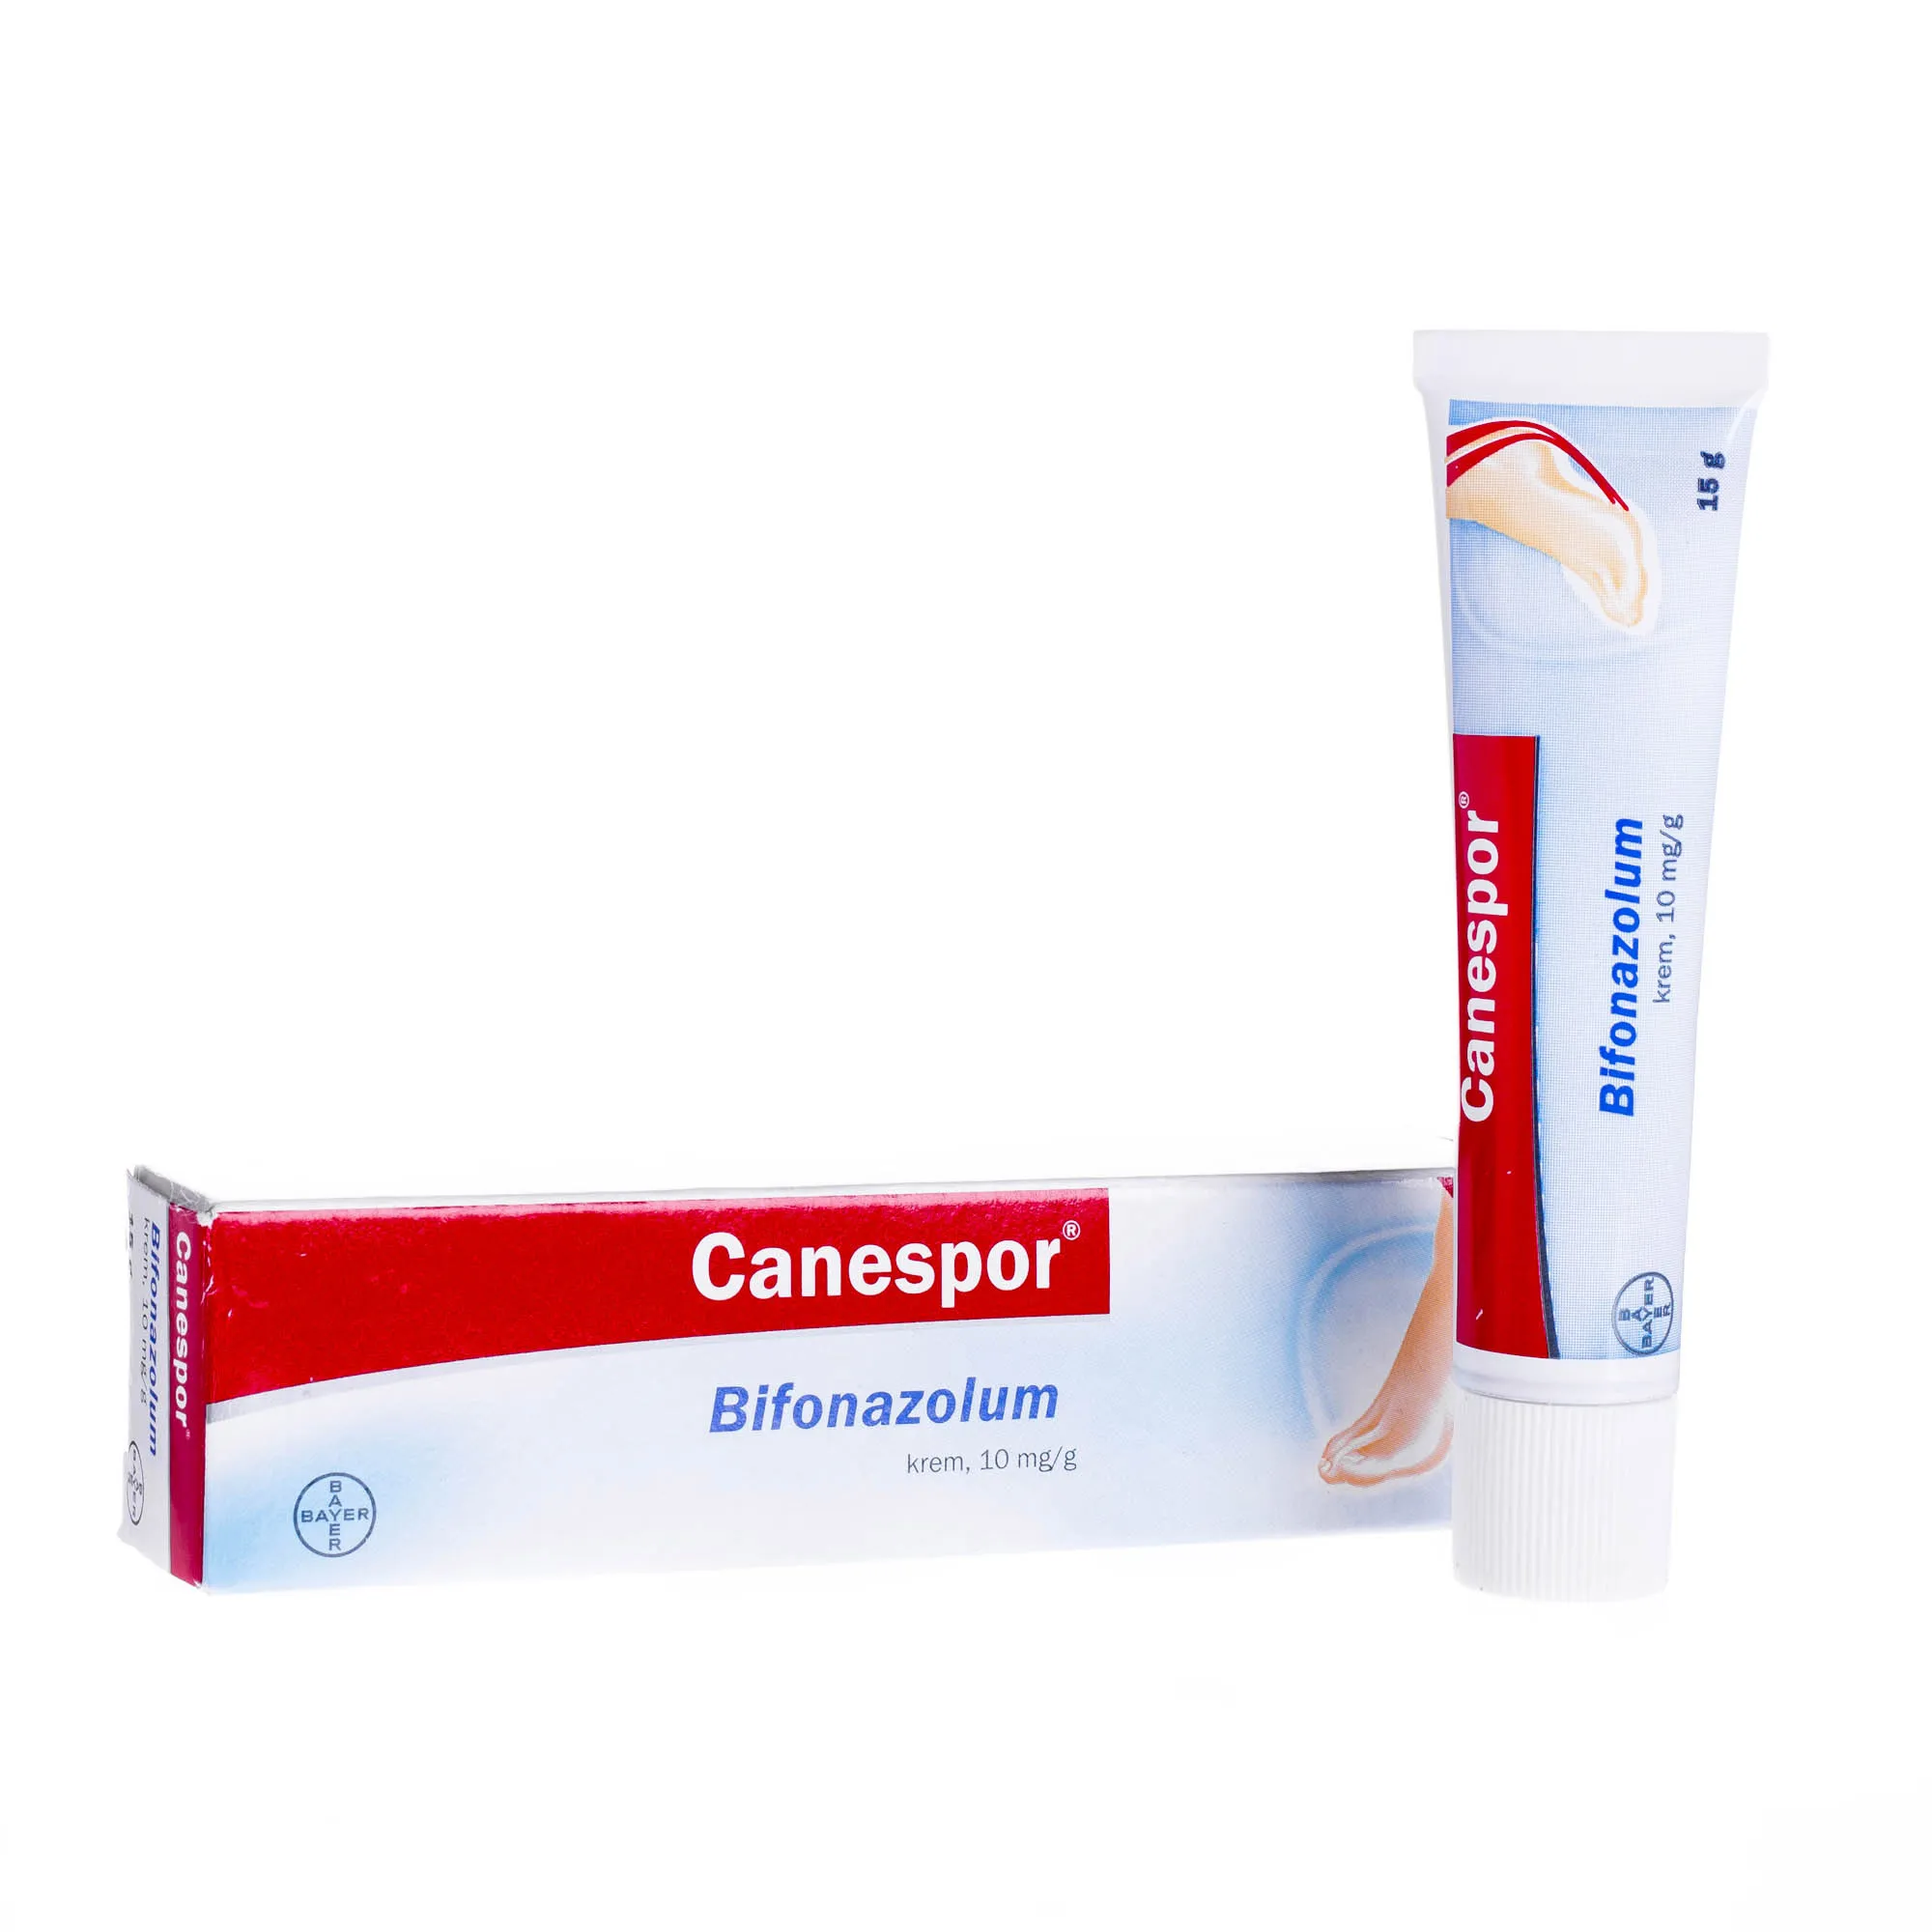 Canespor Bifonazolum 10 mg/g - krem przeciwgrzybiczny do stosowania miejscowego na skórę, 15 g 